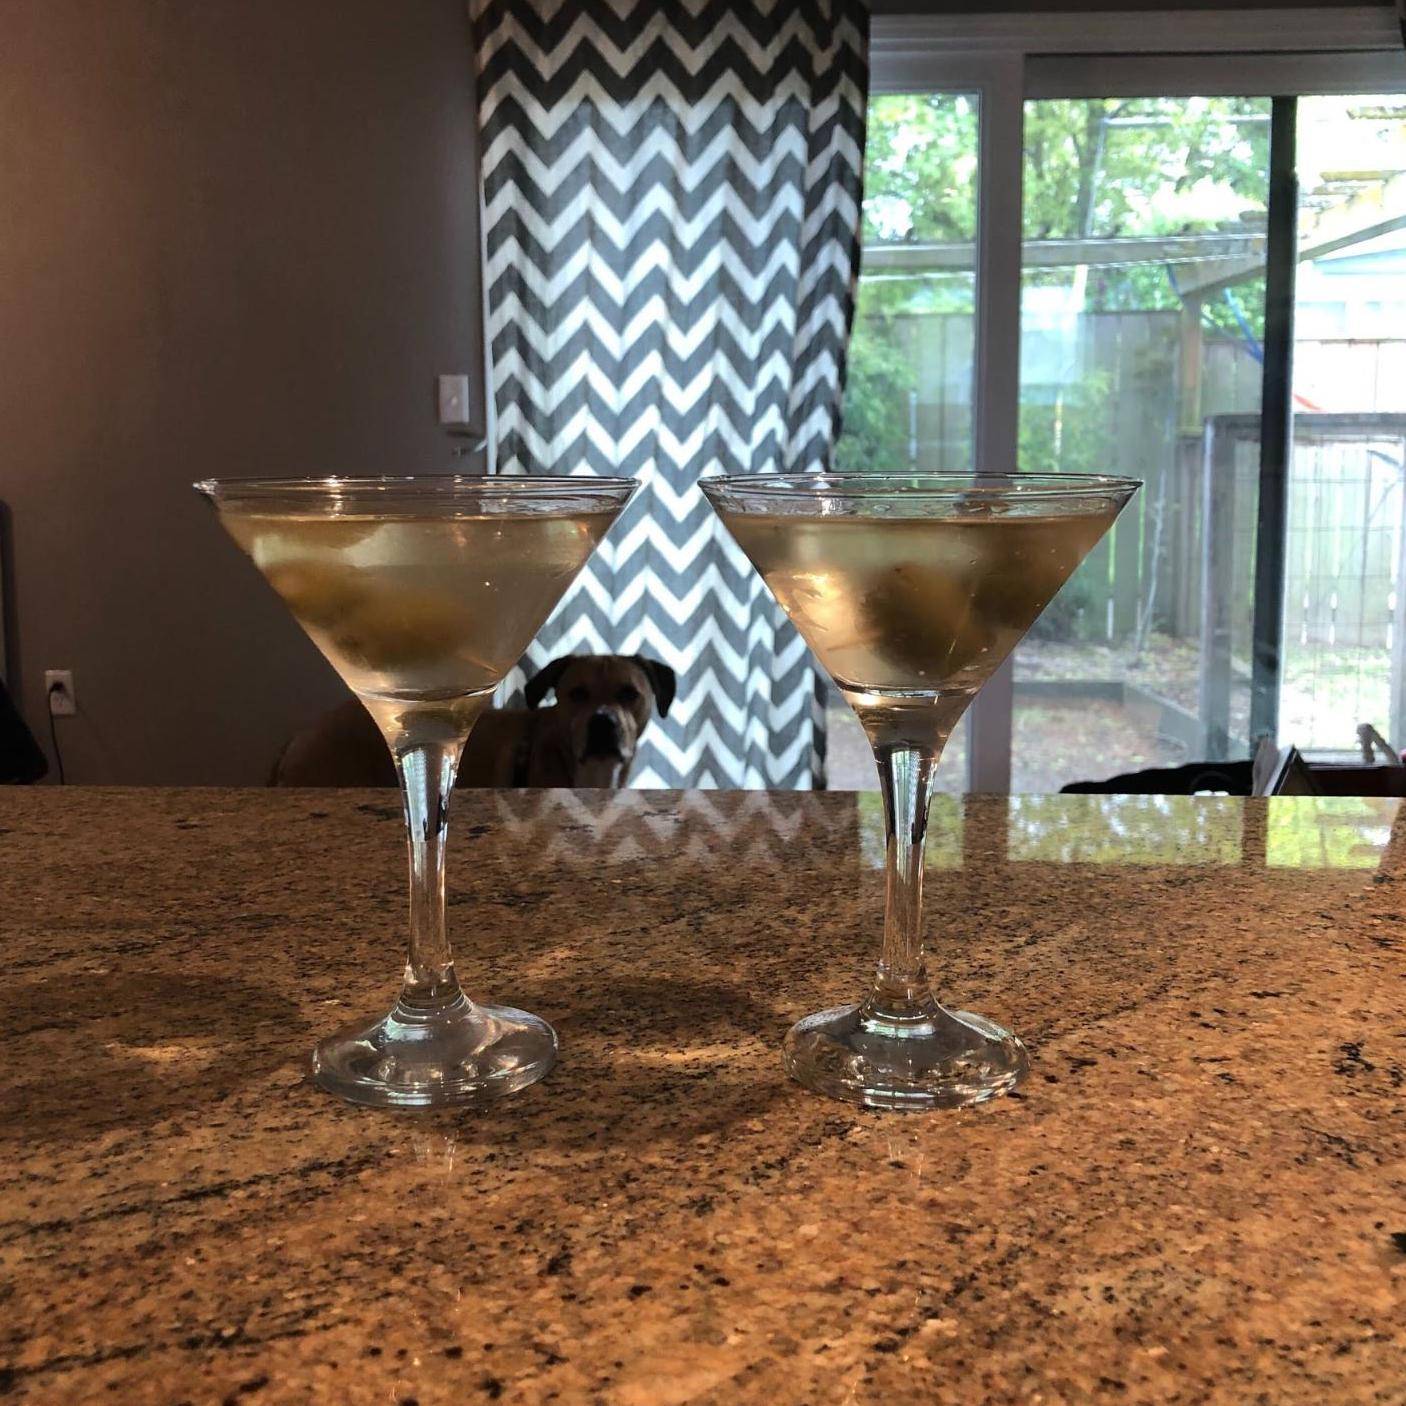 Dirty martinis